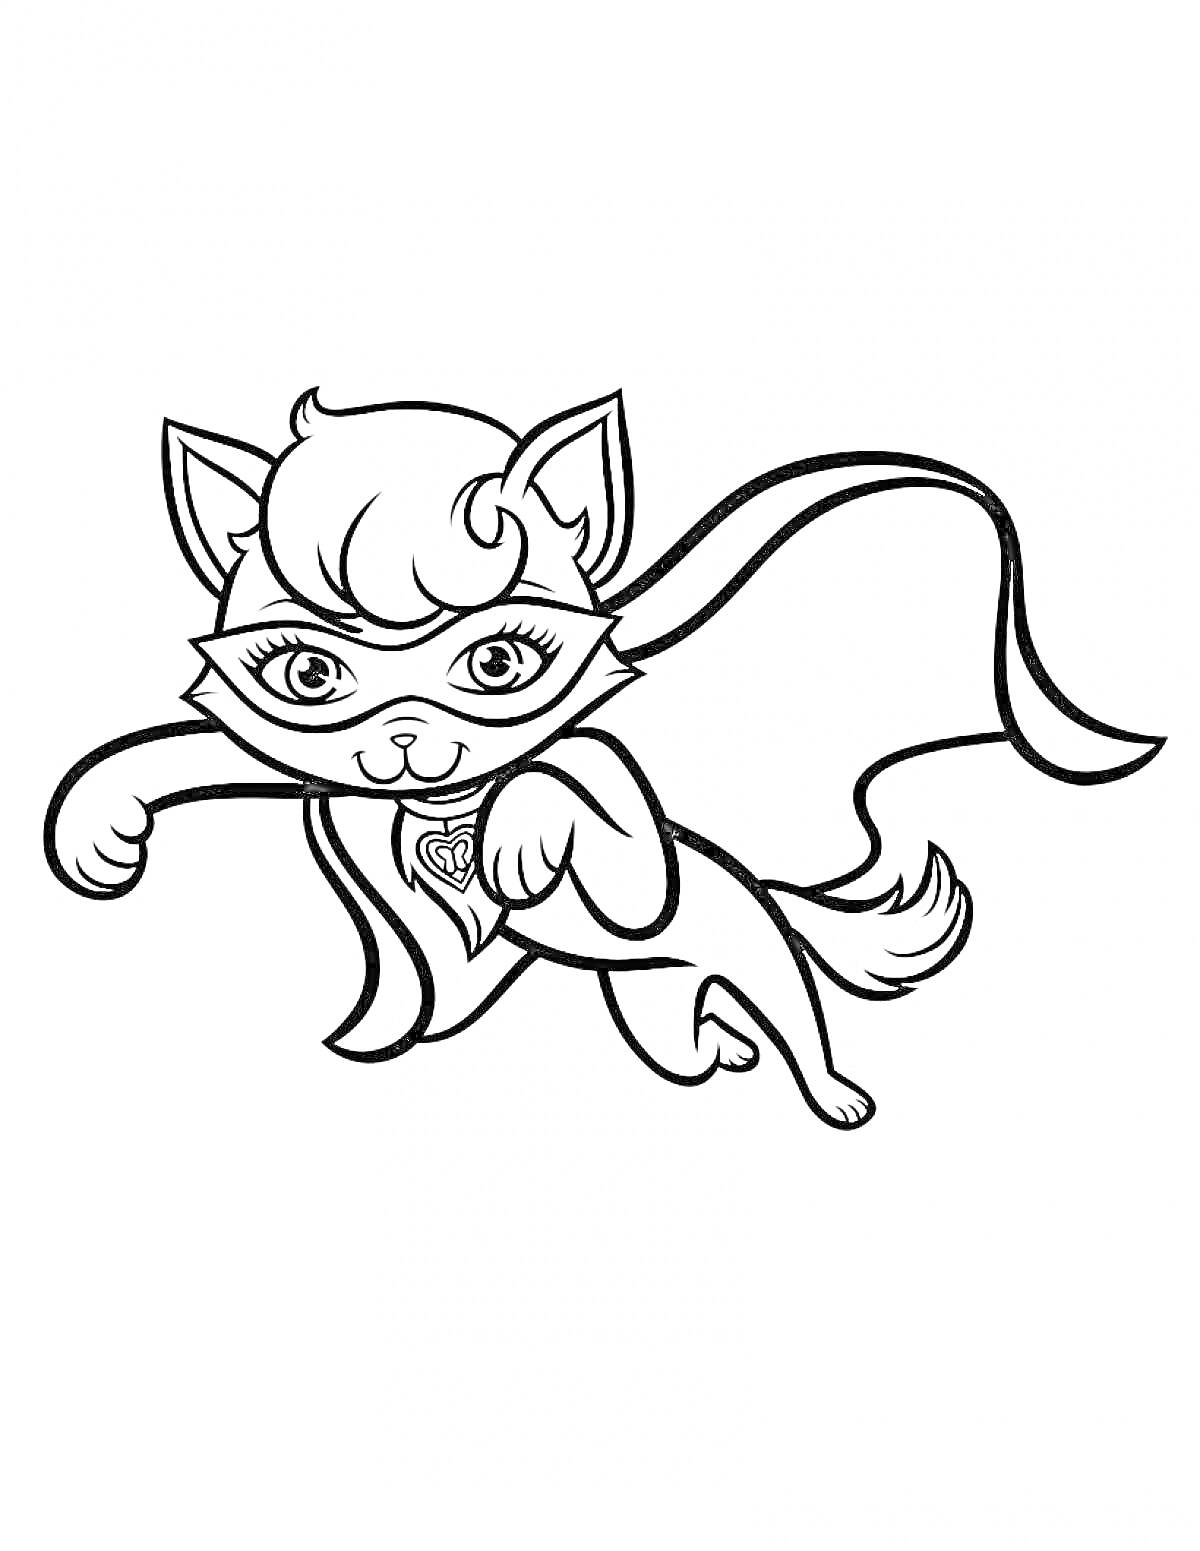 Кошка-супергерой в маске и с плащом, летящая вперёд